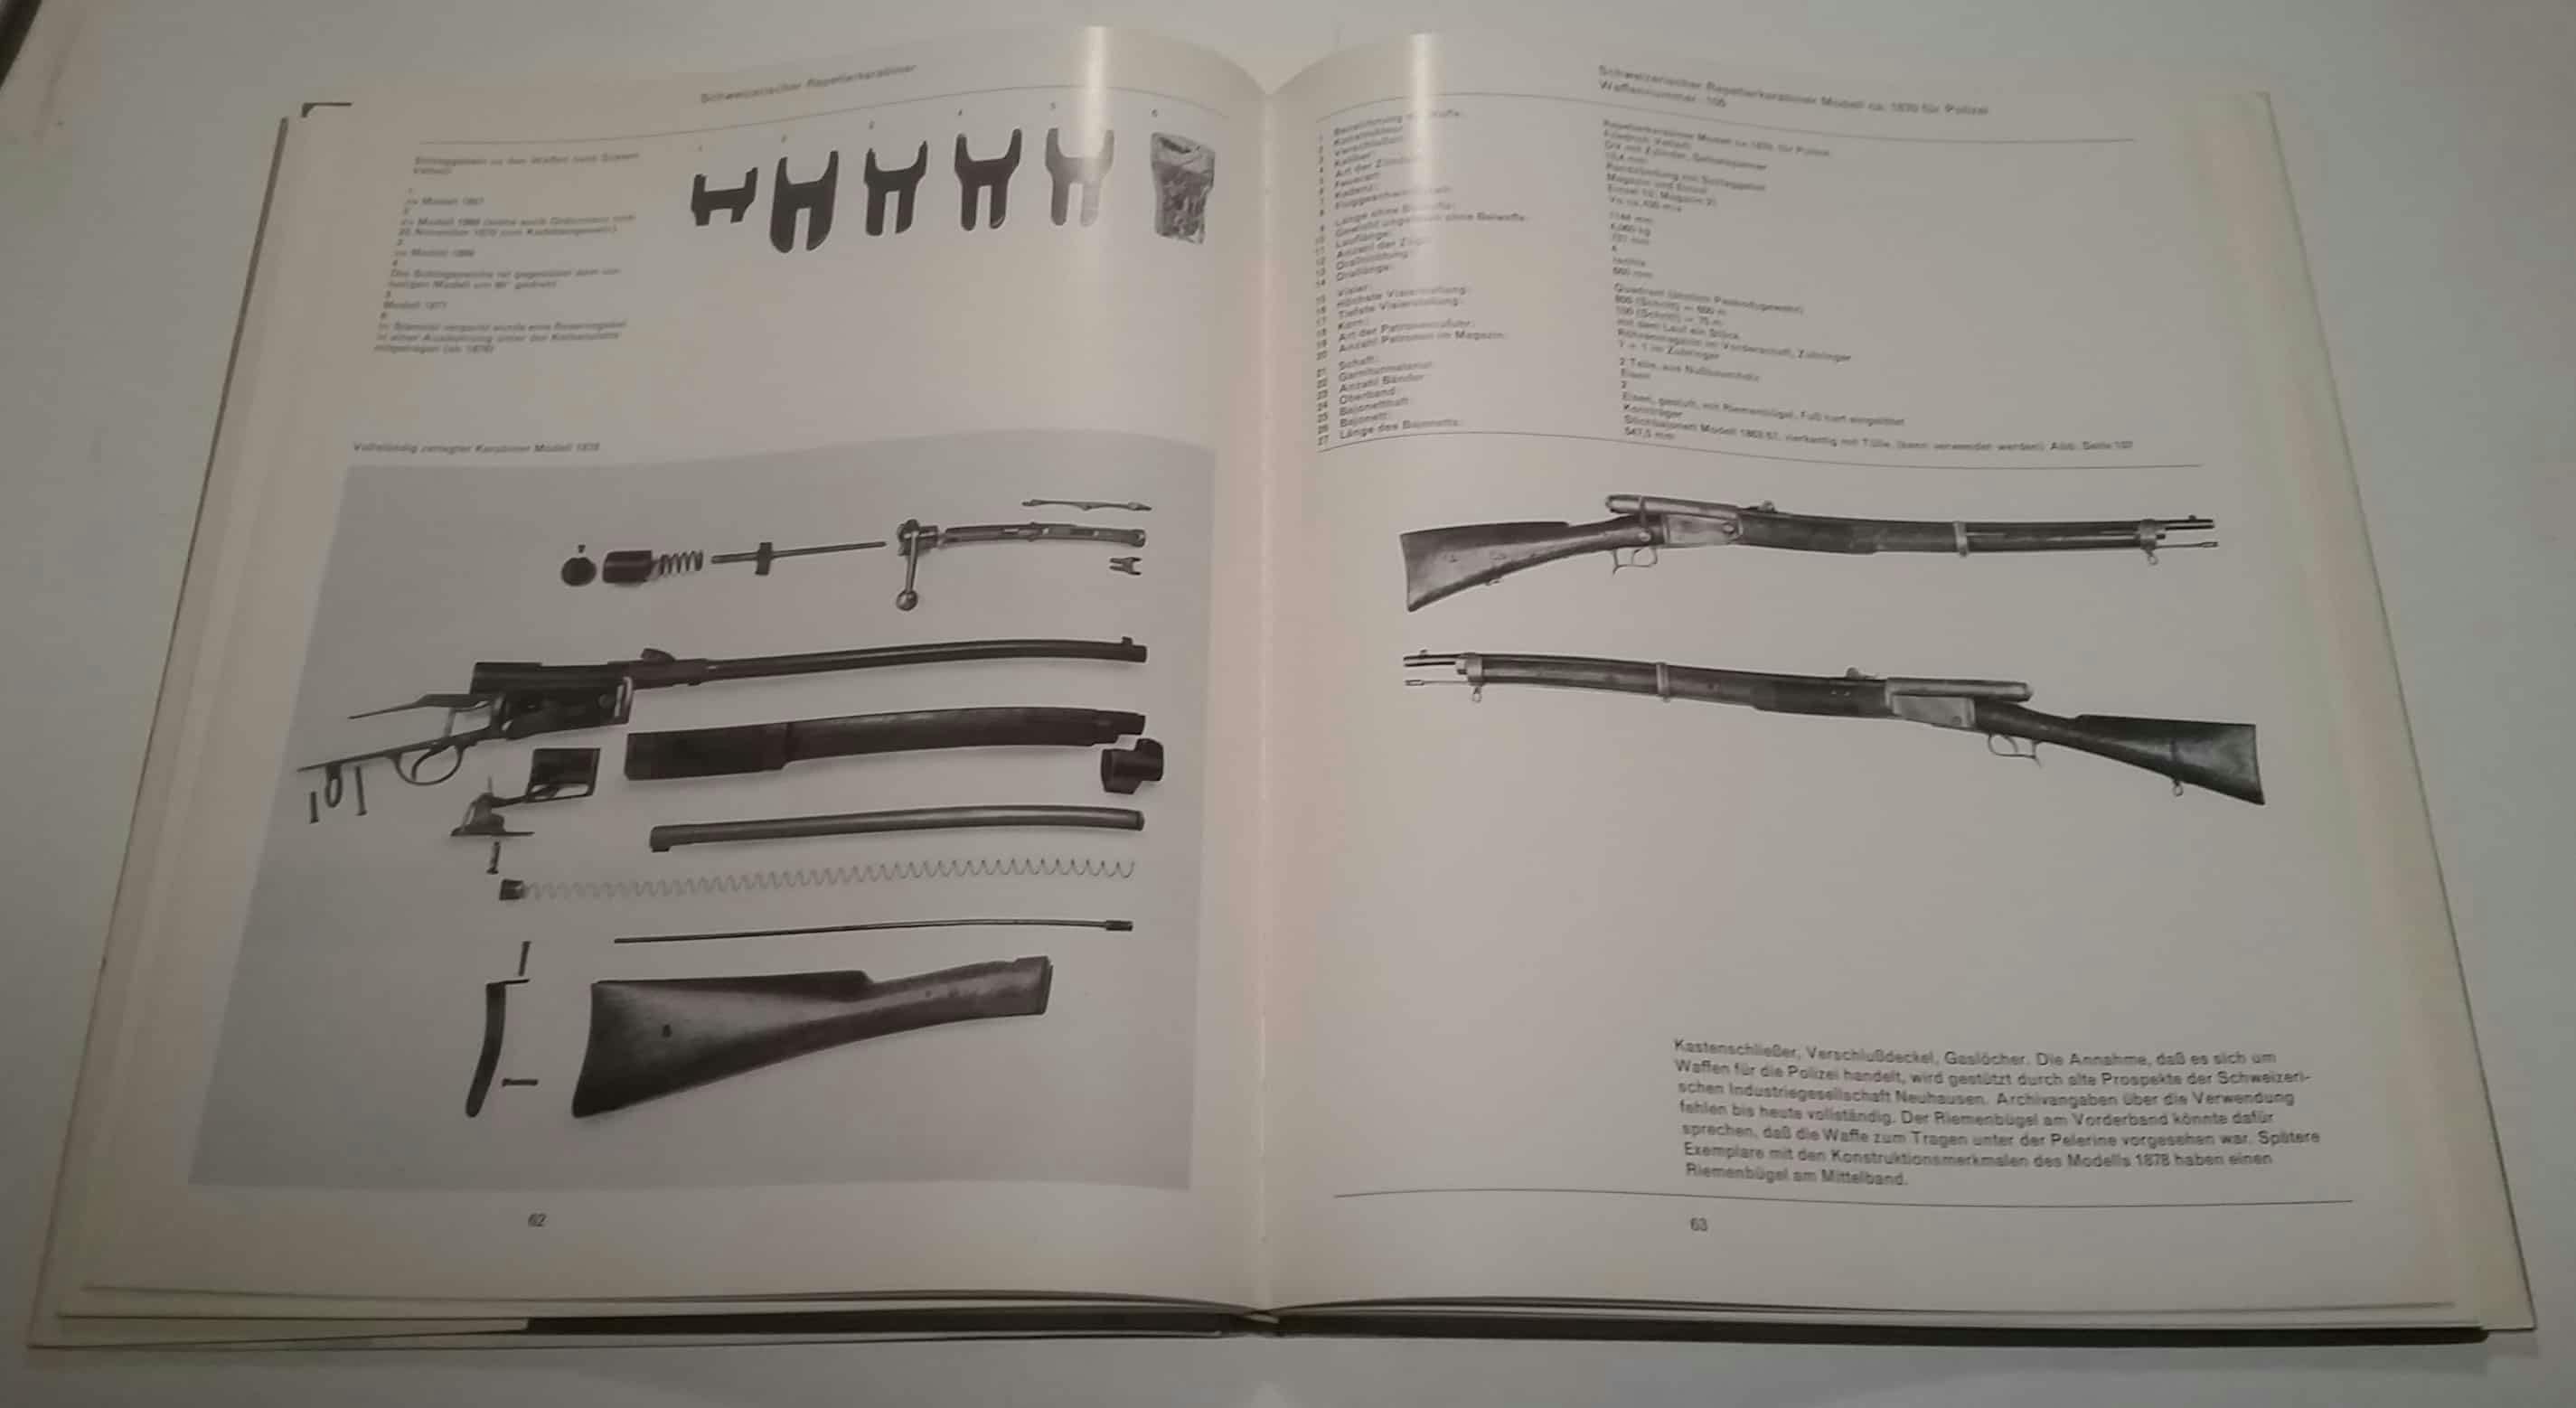 Linkerhand Schlaggabeln zu verschiedenen Waffen, unten ein zerlegter Karabiner Modell 1878. Rechterhand der Schweizerische Repetierkarabiner ca. 1870 für Polizei.